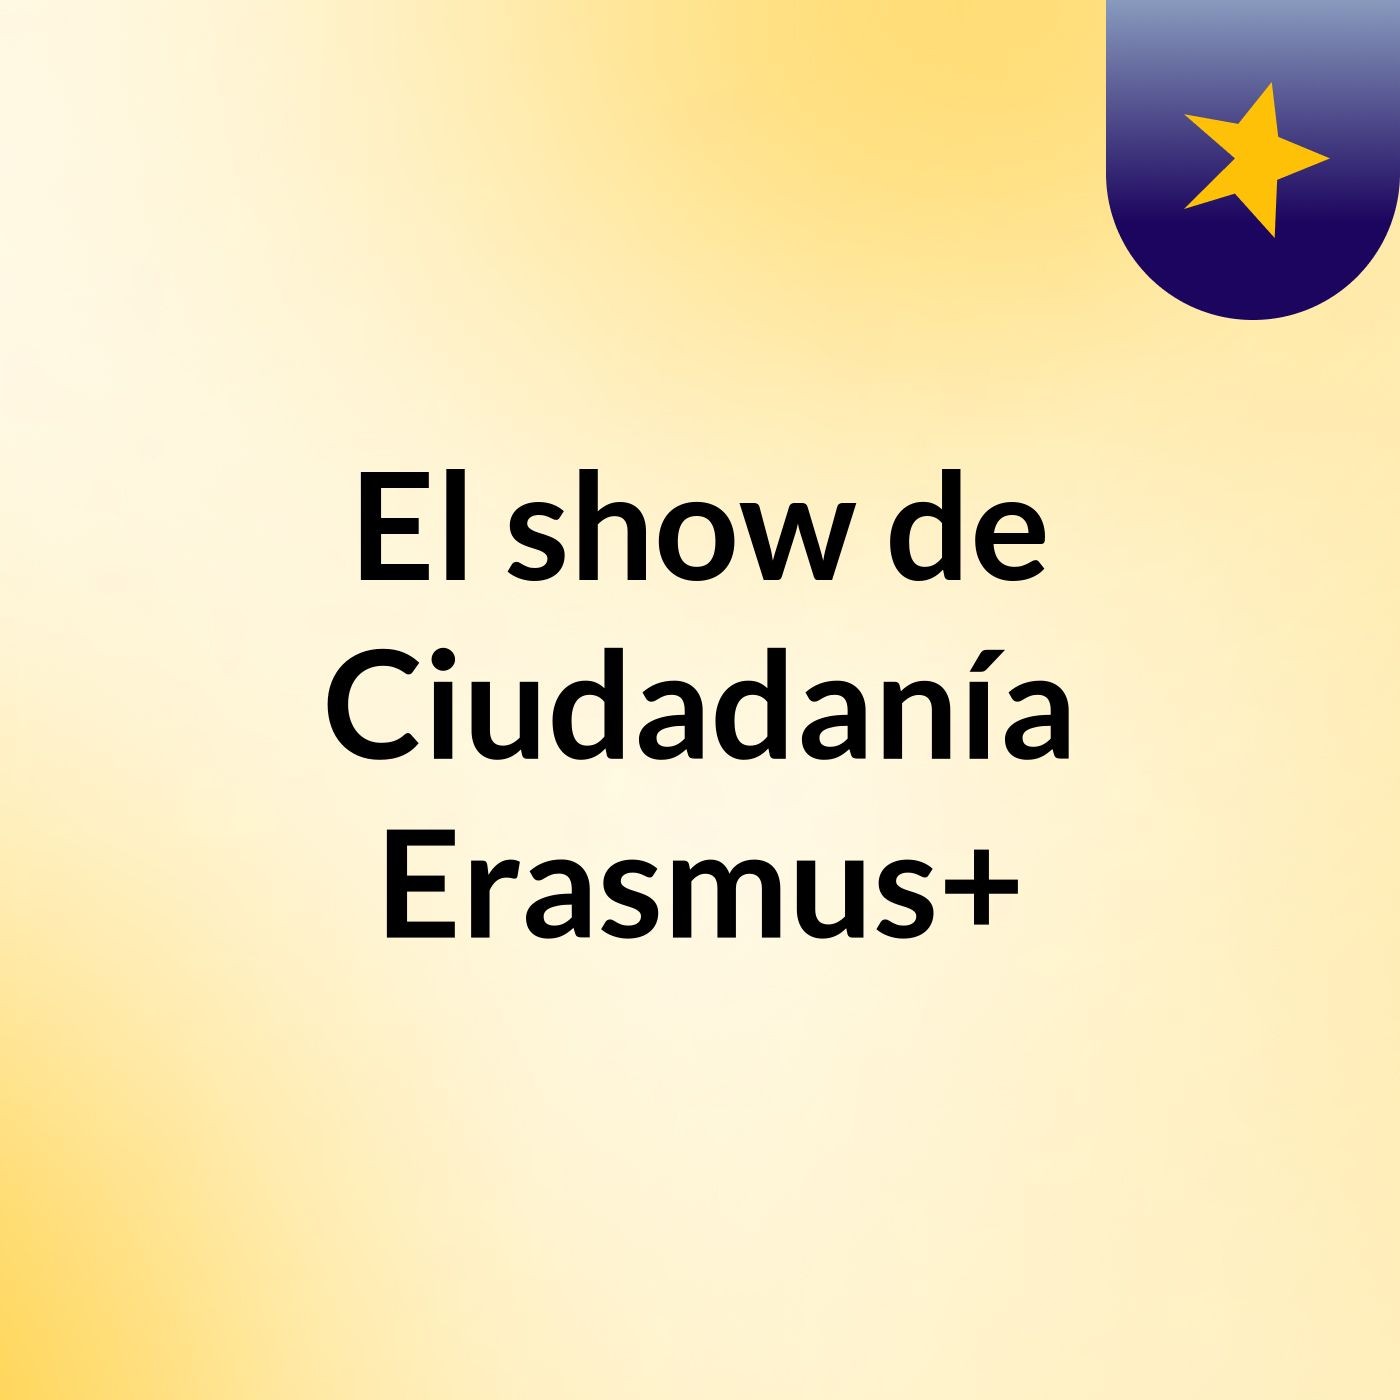 El show de Ciudadanía Erasmus+